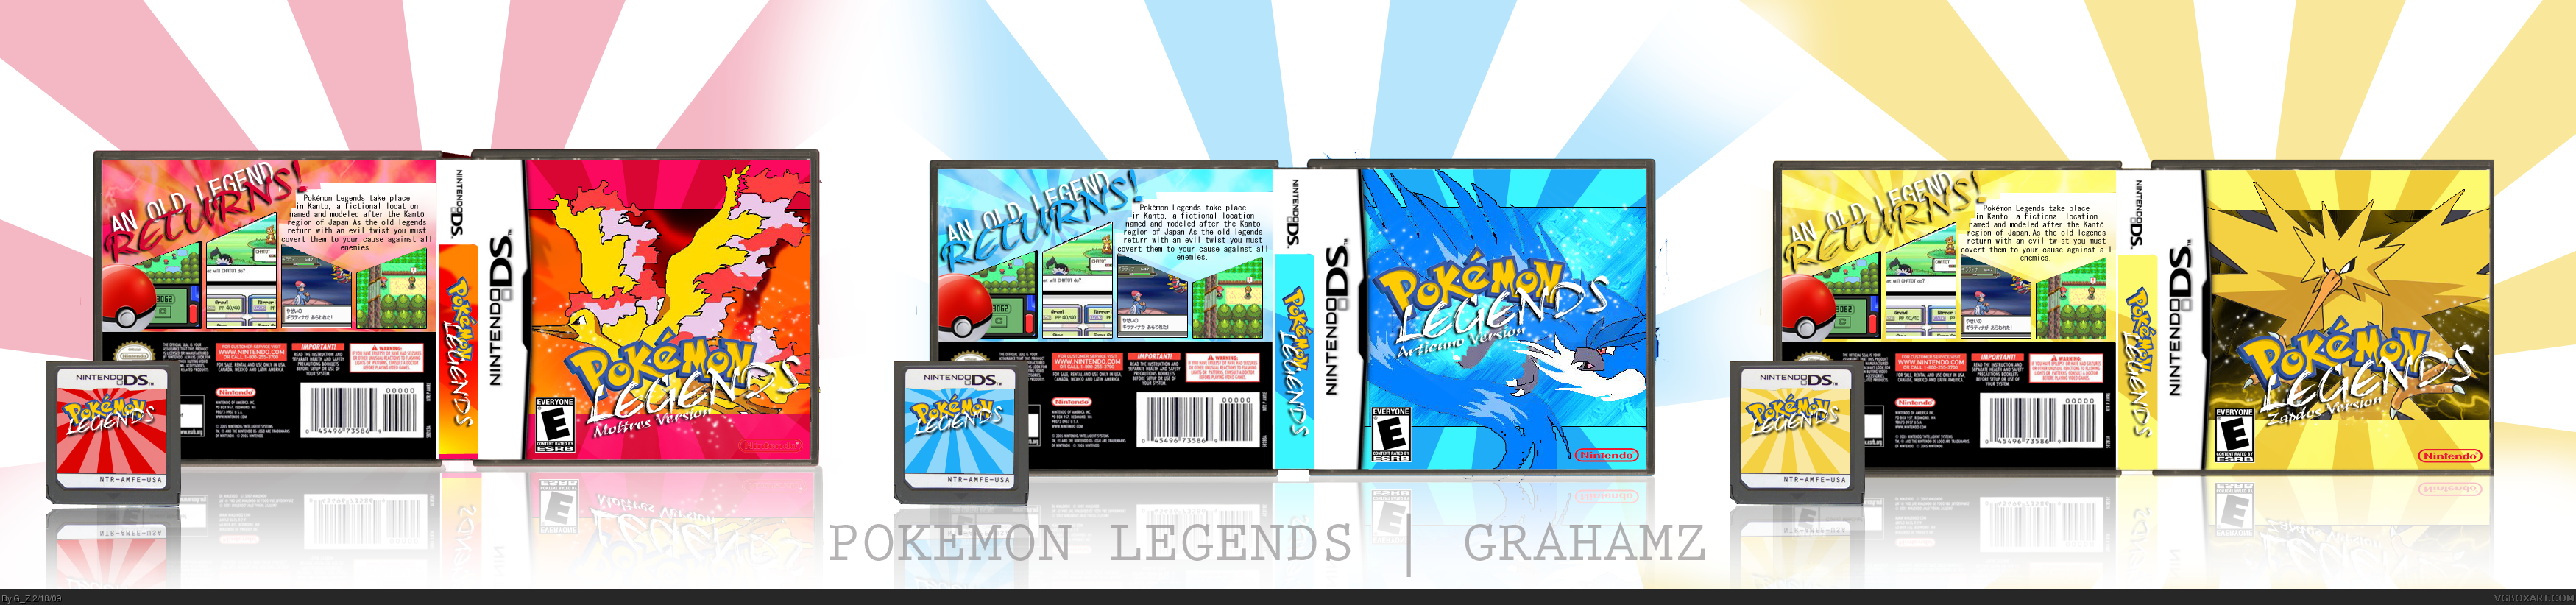 Pokemon Legends box cover